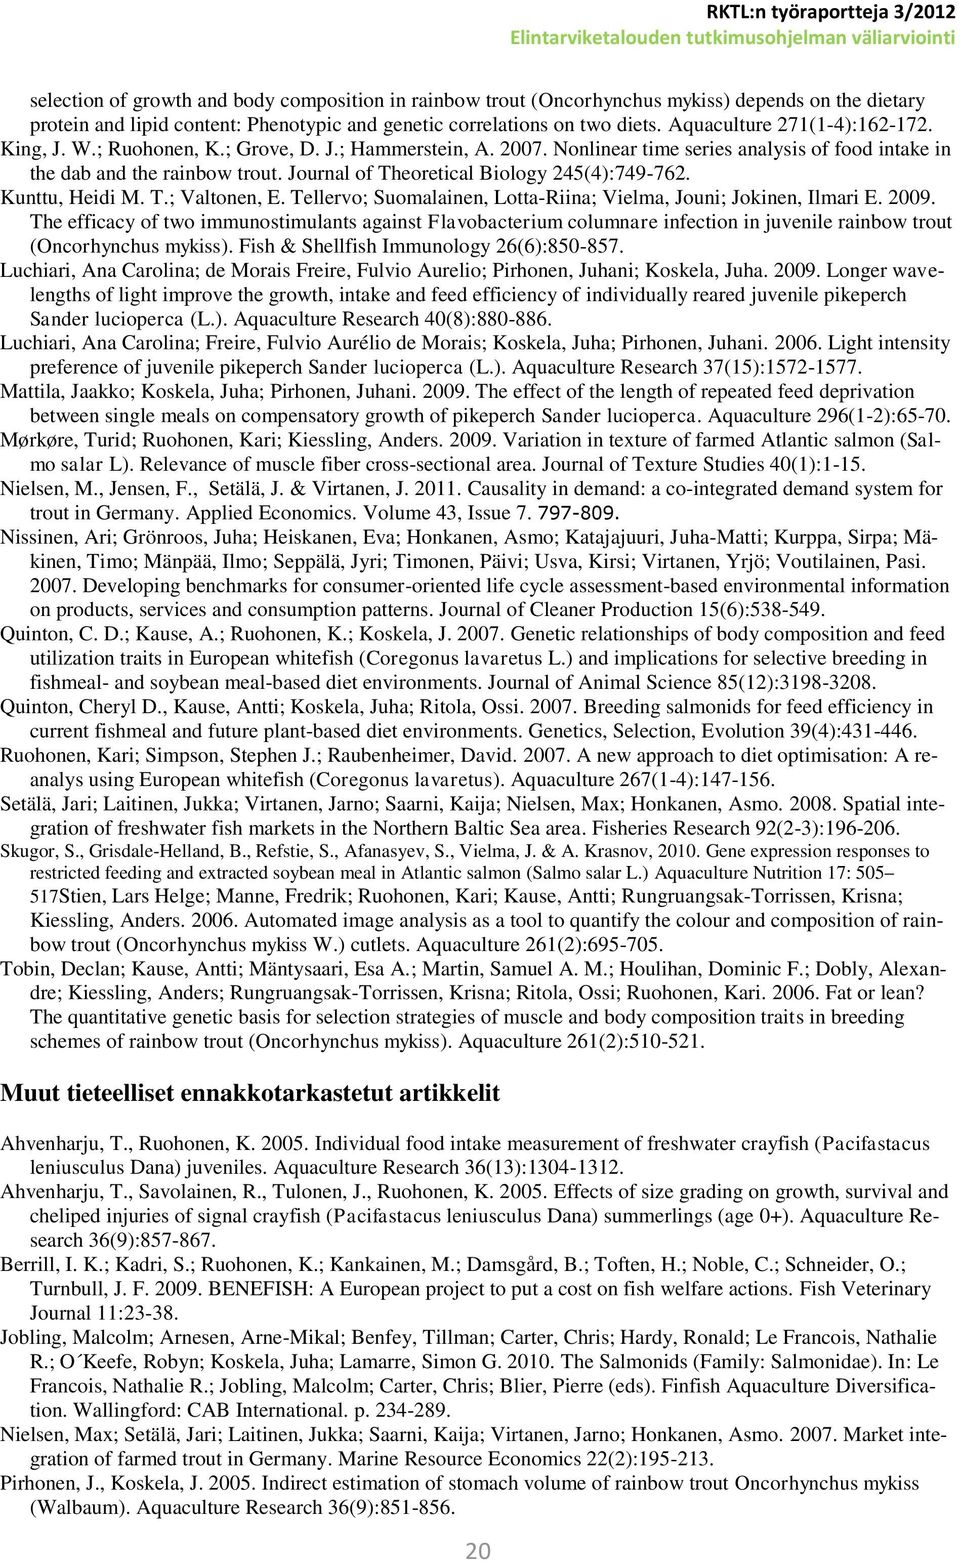 Journal of Theoretical Biology 245(4):749-762. Kunttu, Heidi M. T.; Valtonen, E. Tellervo; Suomalainen, Lotta-Riina; Vielma, Jouni; Jokinen, Ilmari E. 2009.